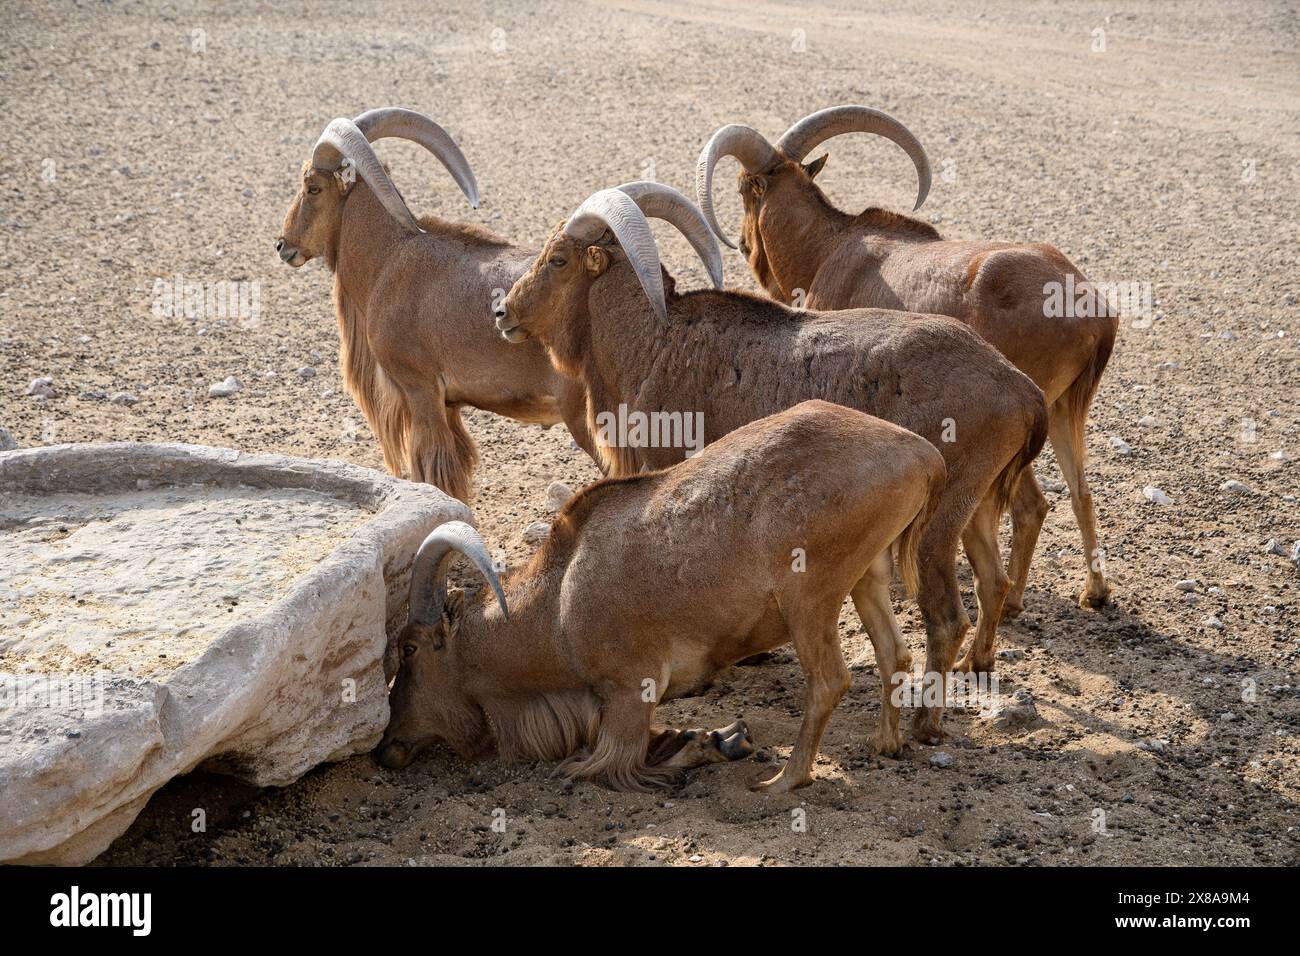 Eine Herde von Berberschafen hydriert in einer Wüstenoase und zeigt ihre Widerstandsfähigkeit in trockenen Landschaften. Stockfoto